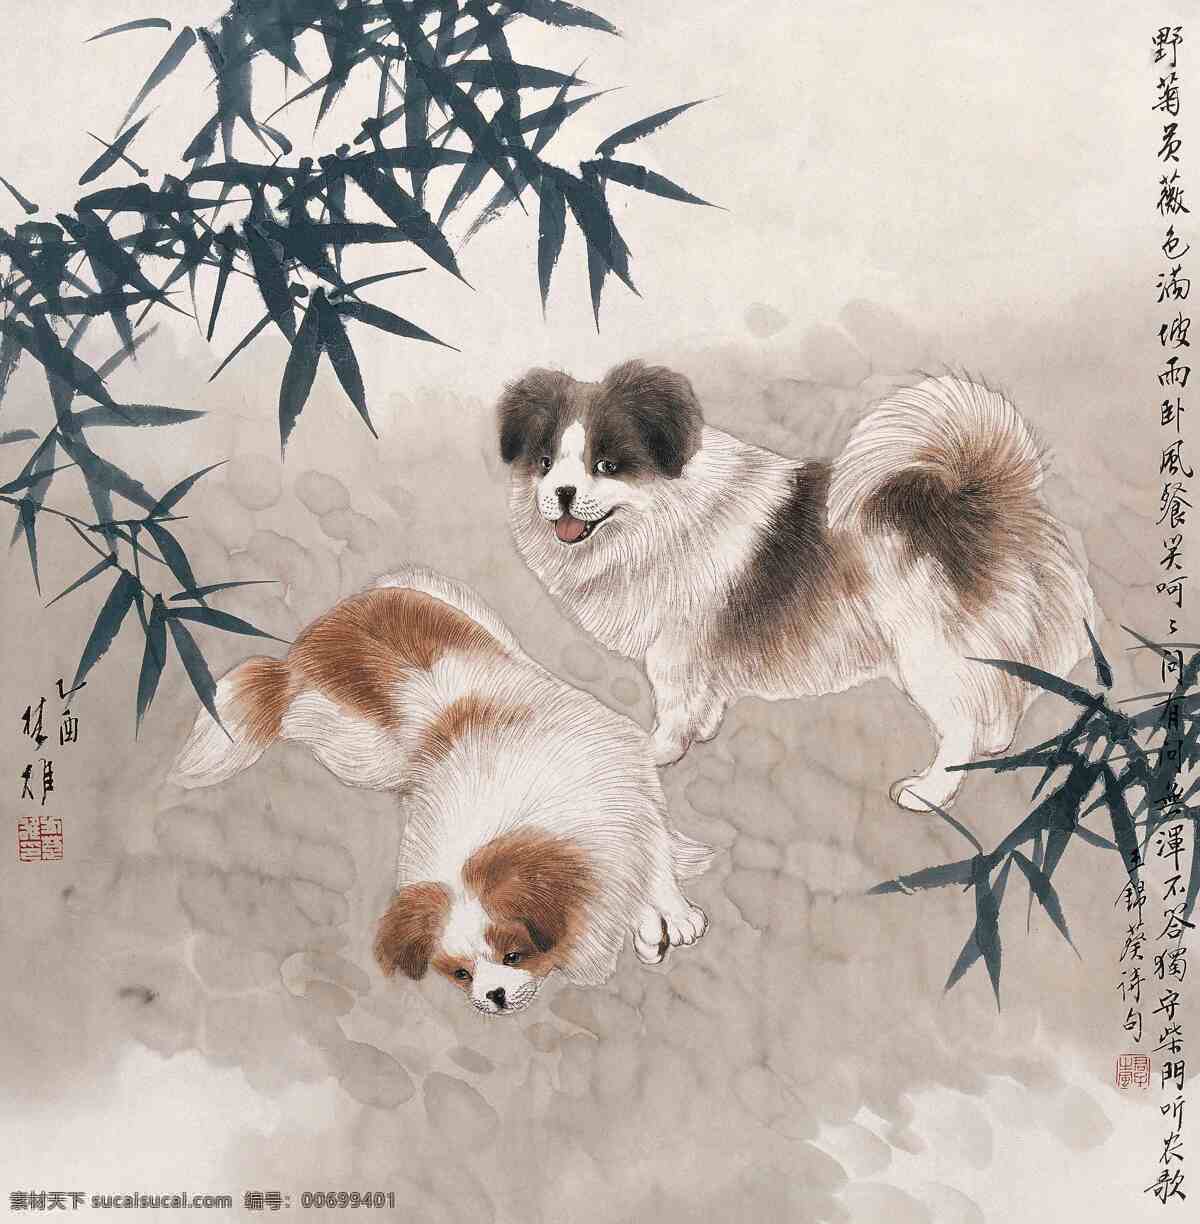 人情 付 笑 方楚雄作品 竹林中 两只猴子狗 悠闲 游荡 中国古代画 中国古画 文化艺术 绘画书法